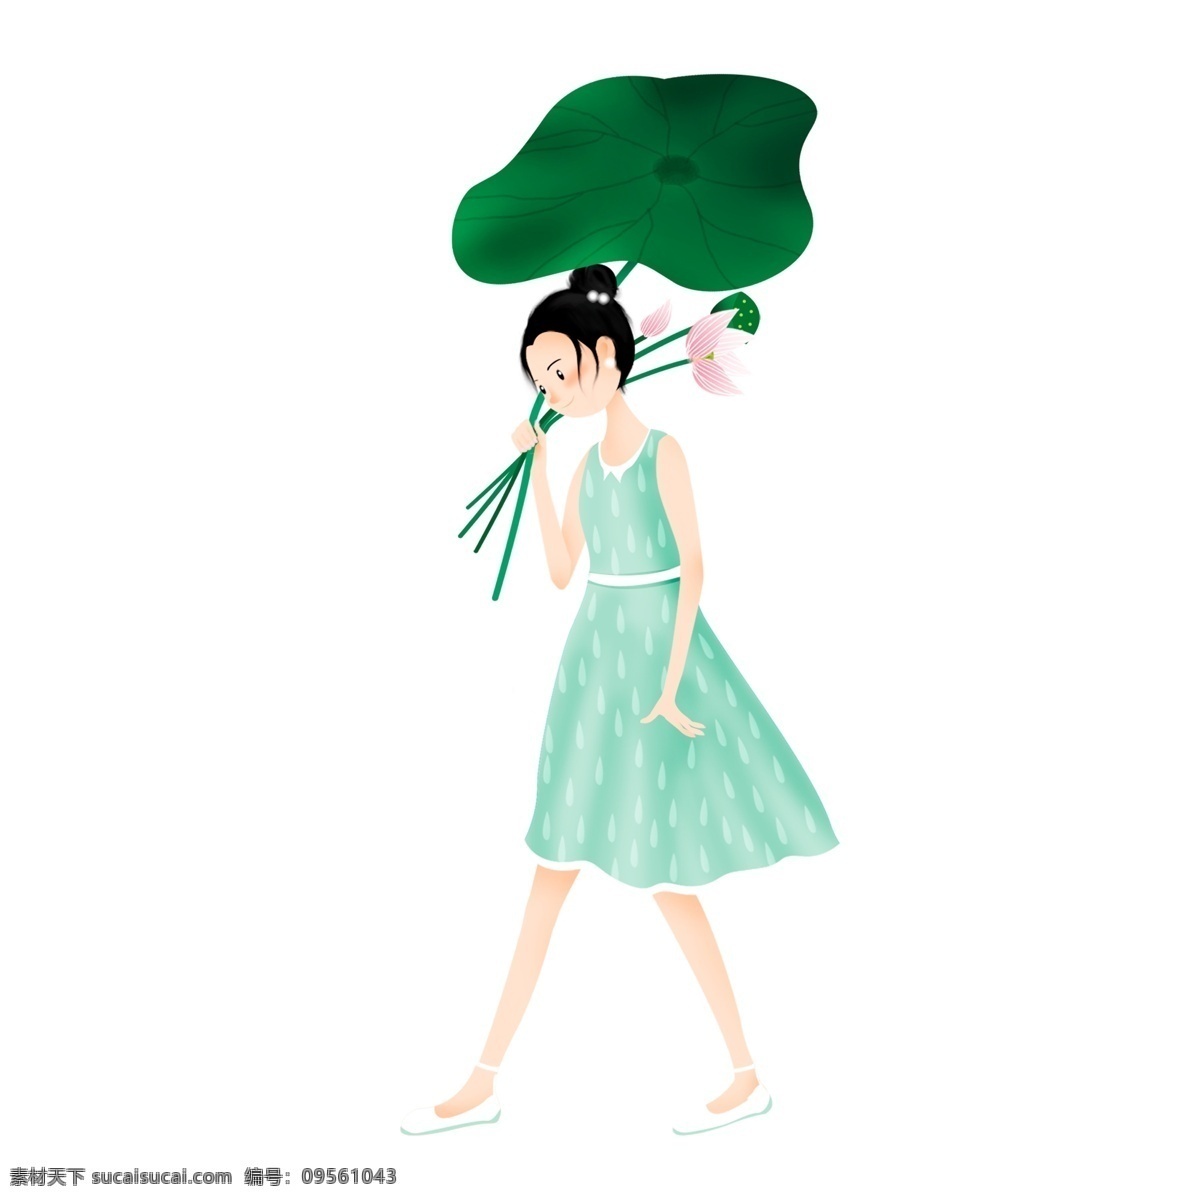 绿色 小 清新 撑 荷叶 伞 女孩 小清新 夏季 夏日 插画 卡通 手绘 荷花 少女